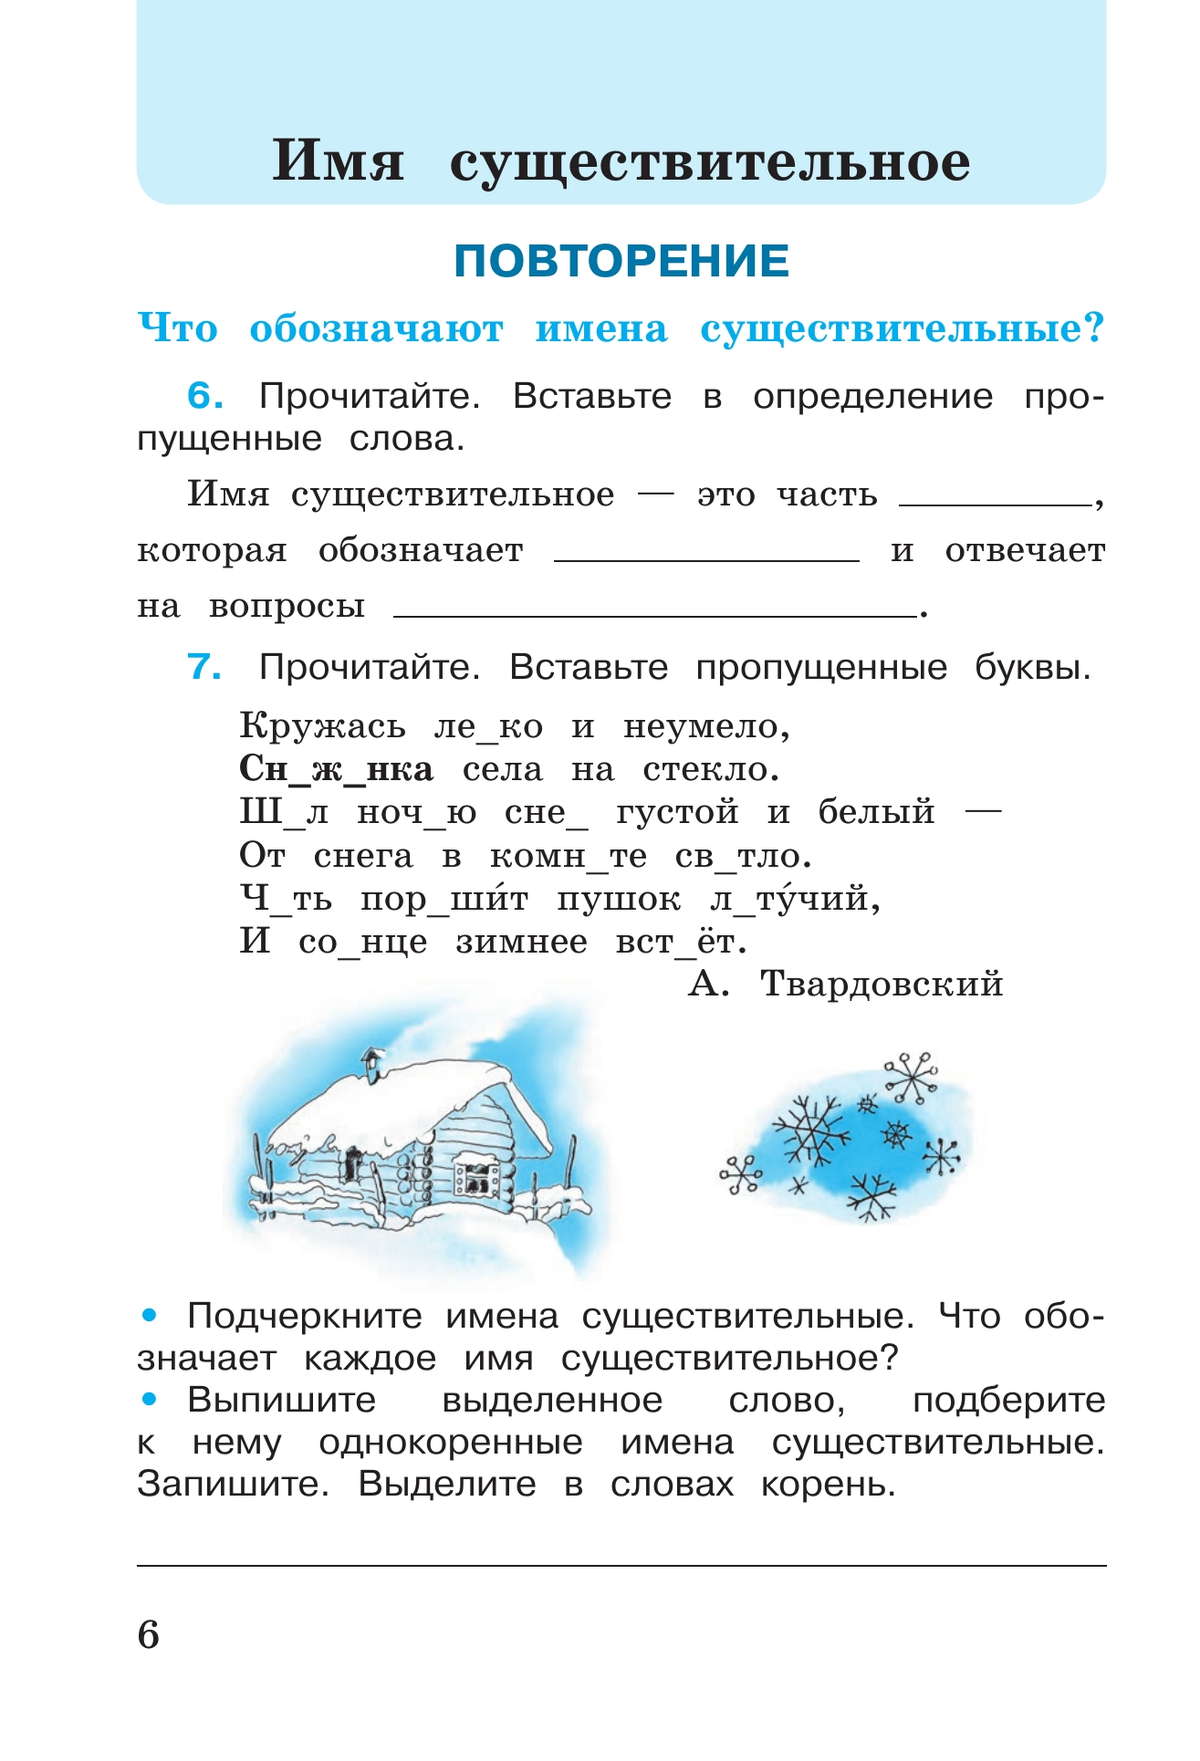 Русский язык. Рабочая тетрадь. 3 класс. В 2 частях. Часть 2 6